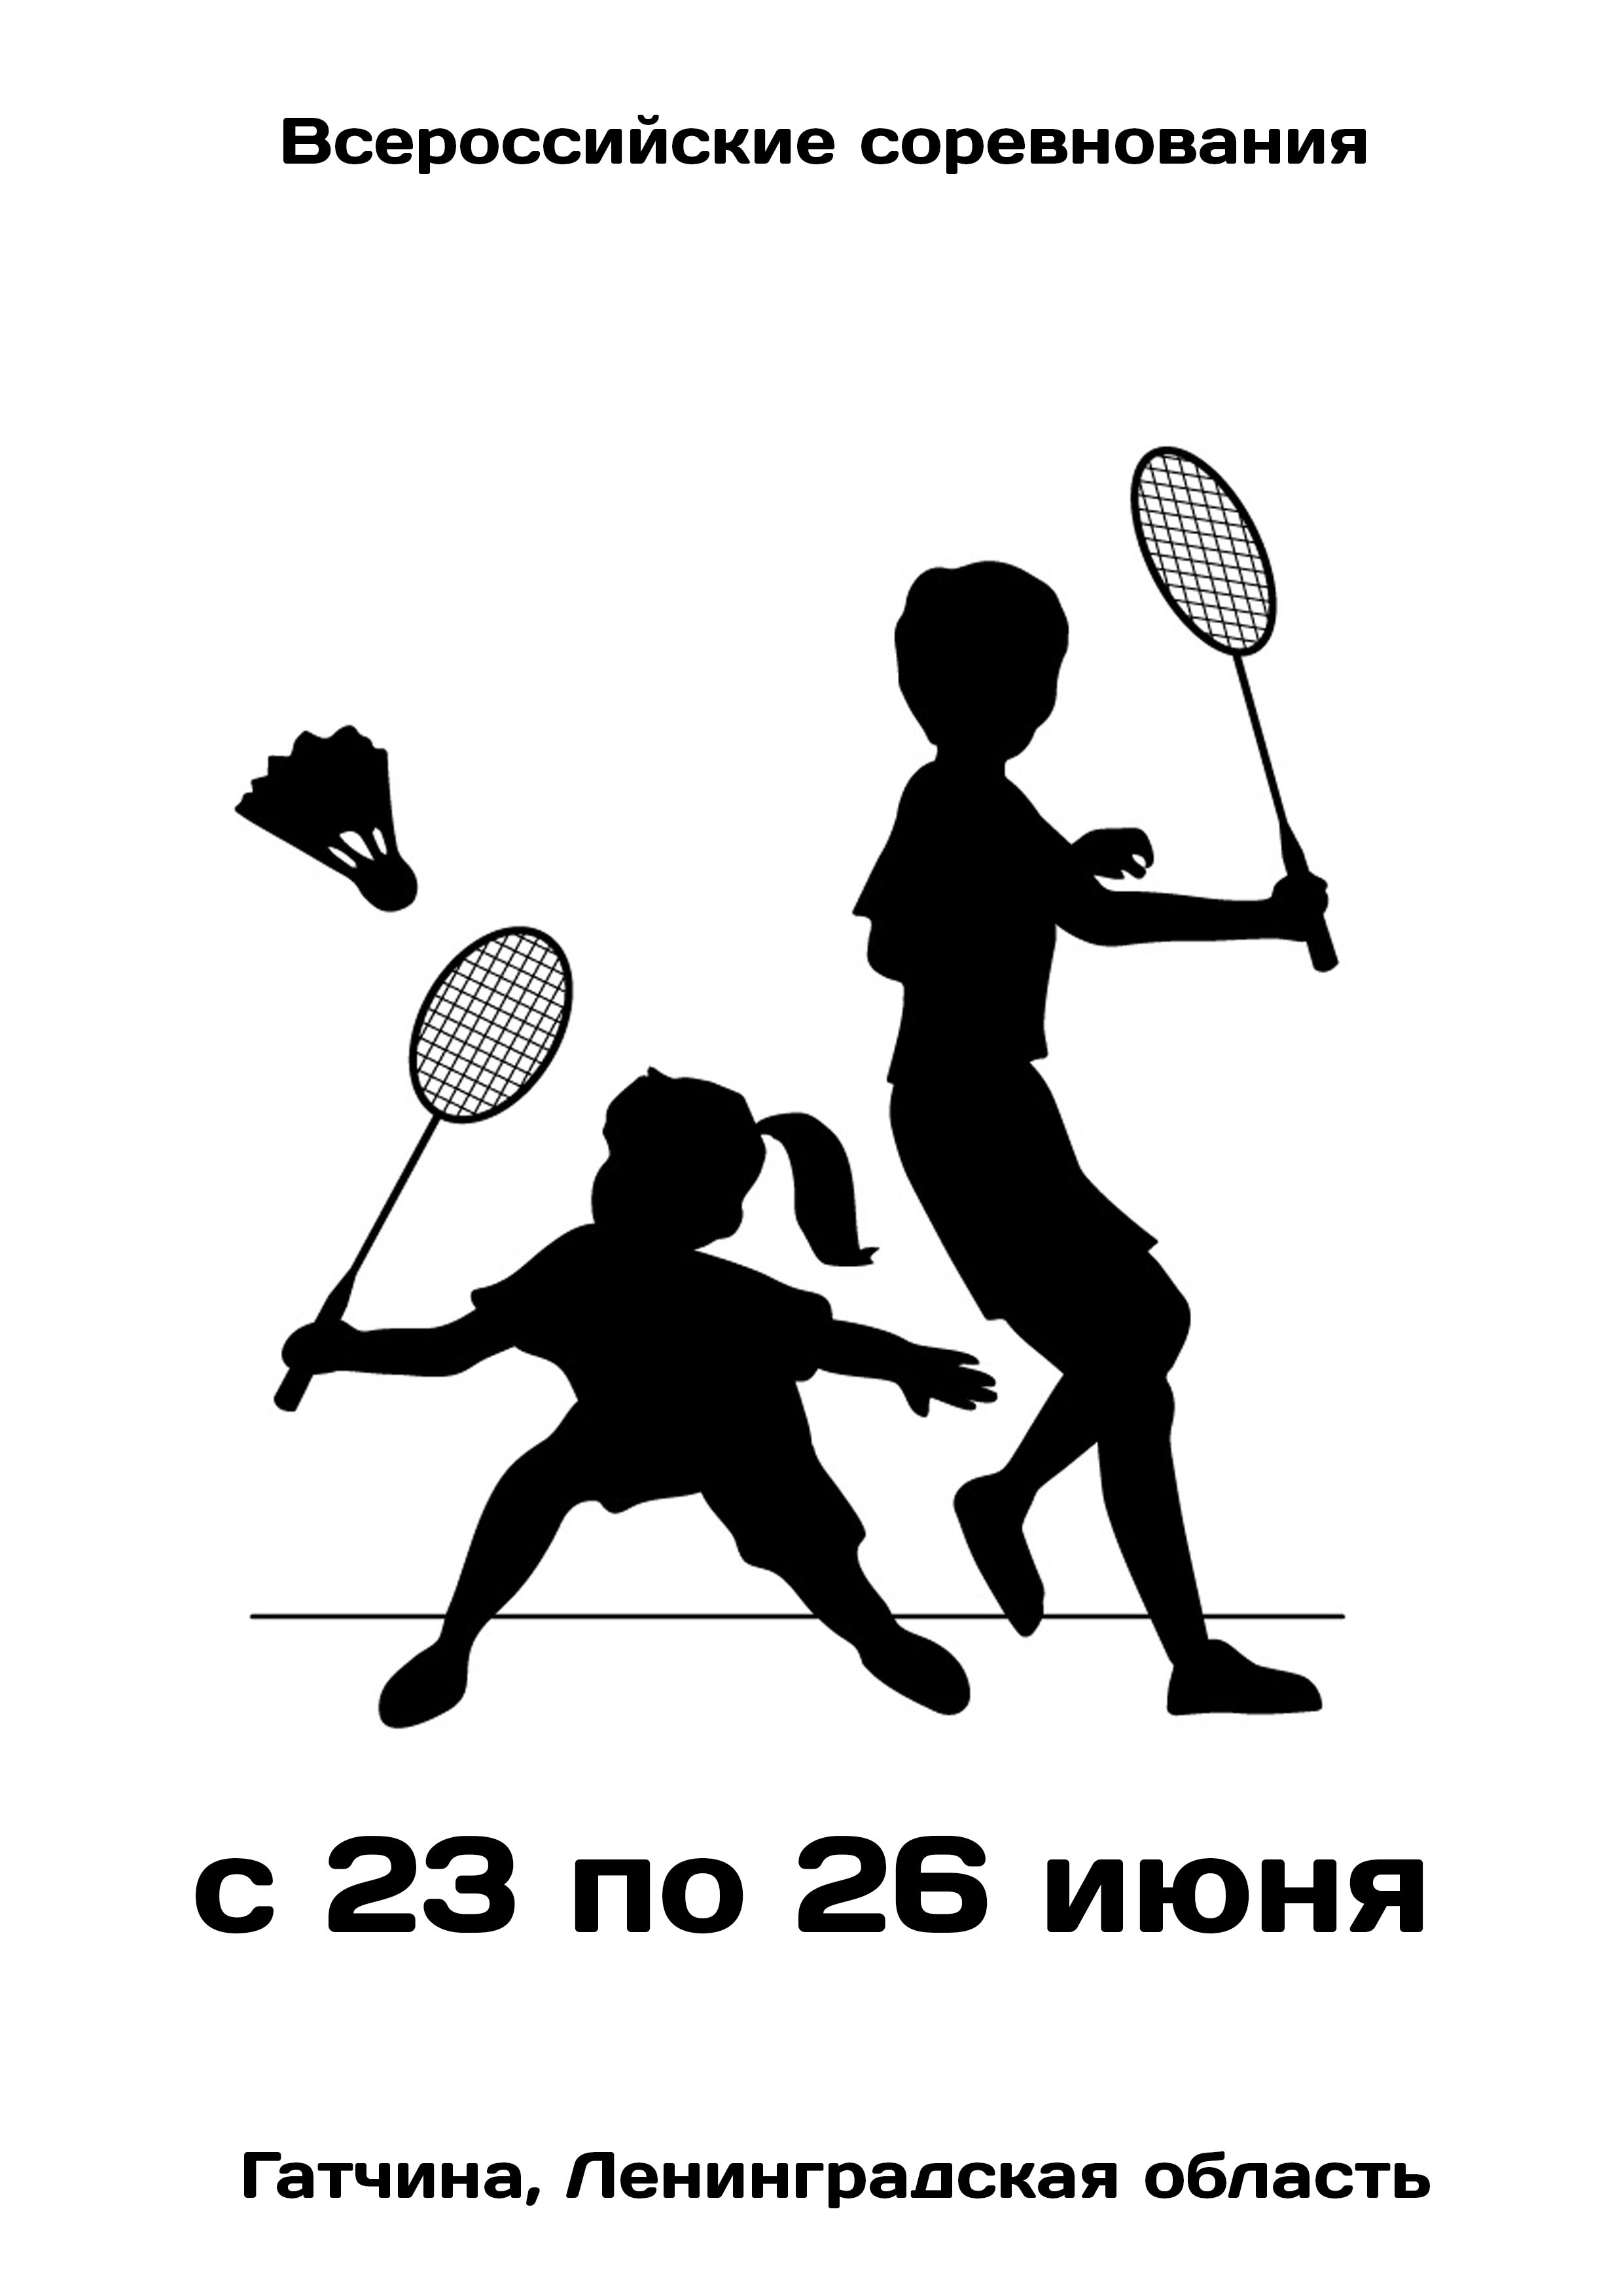 Всероссийские соревнования  по бадминтону 23  Của tháng sáu
 2023  năm
 